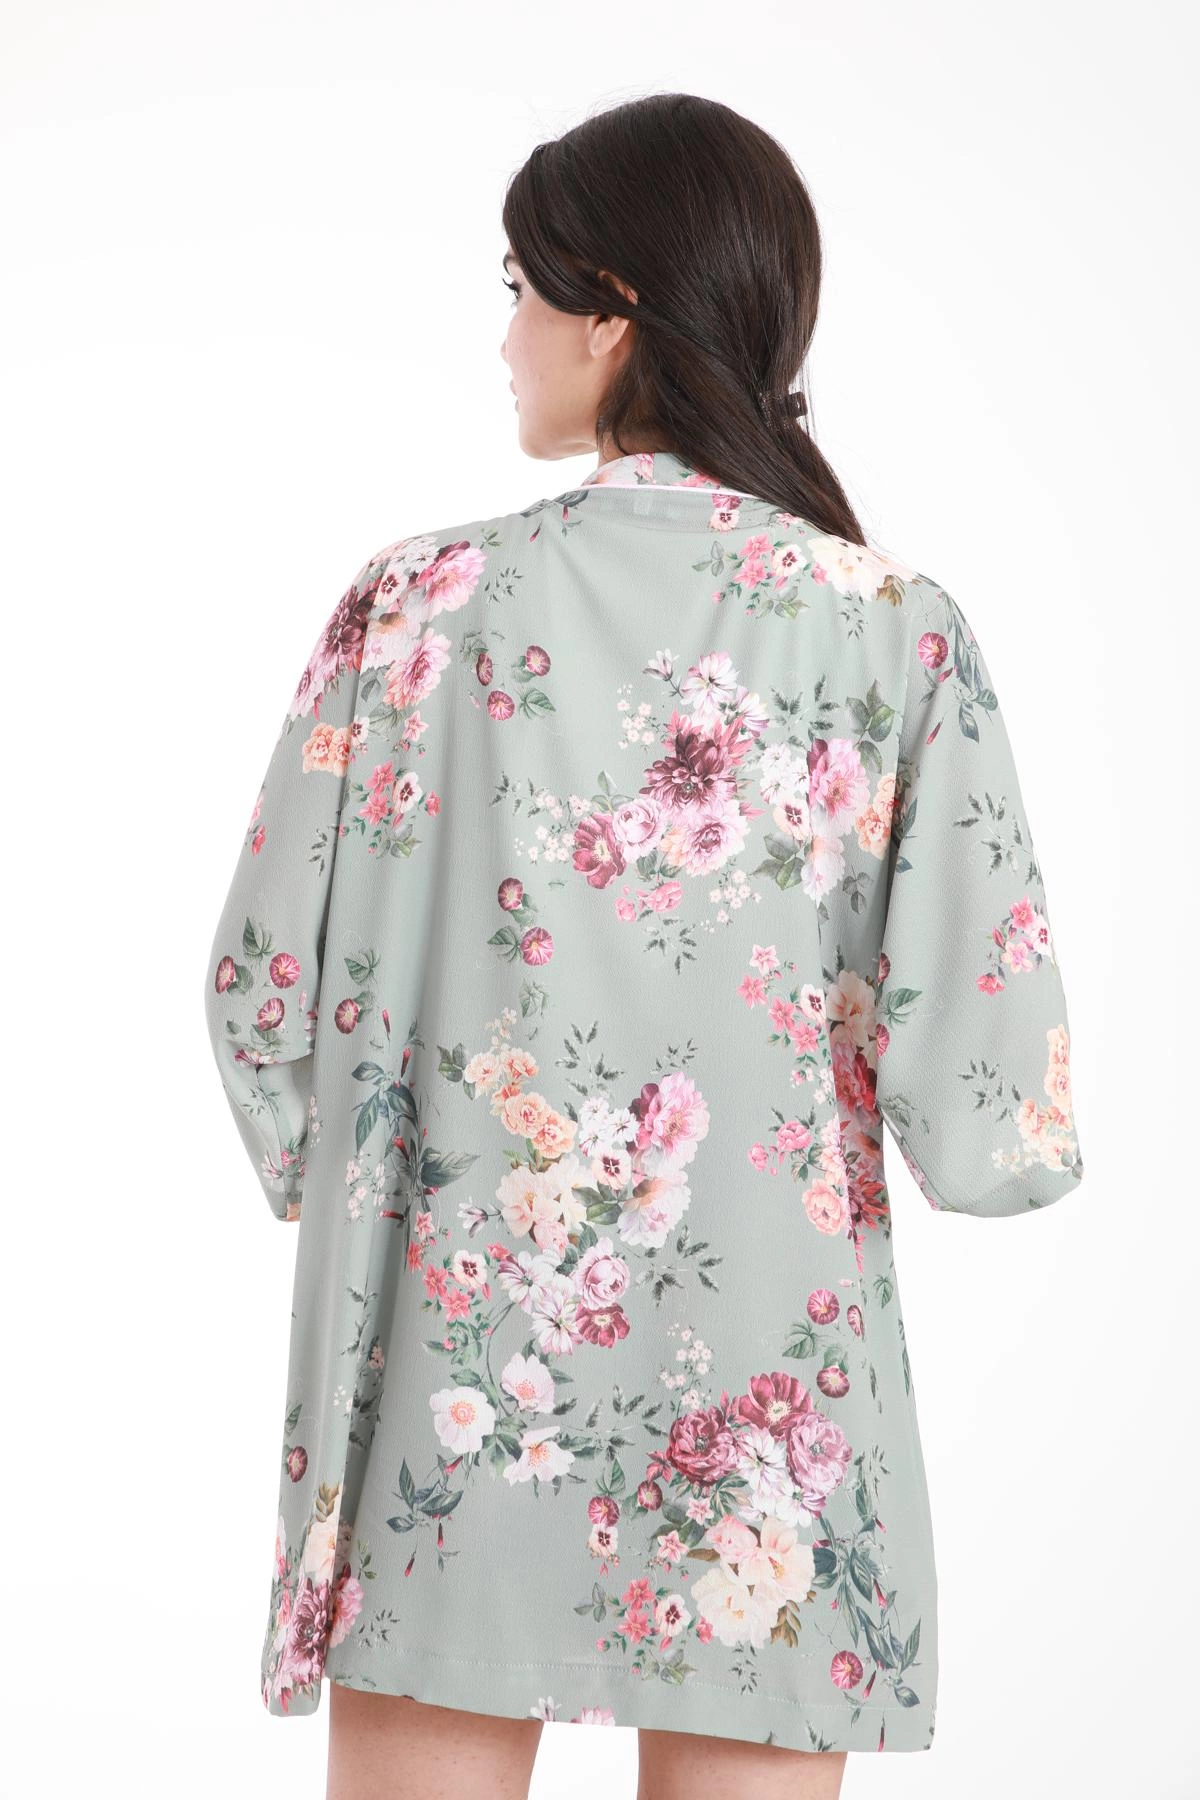 Krep kumaş kimonolu takım